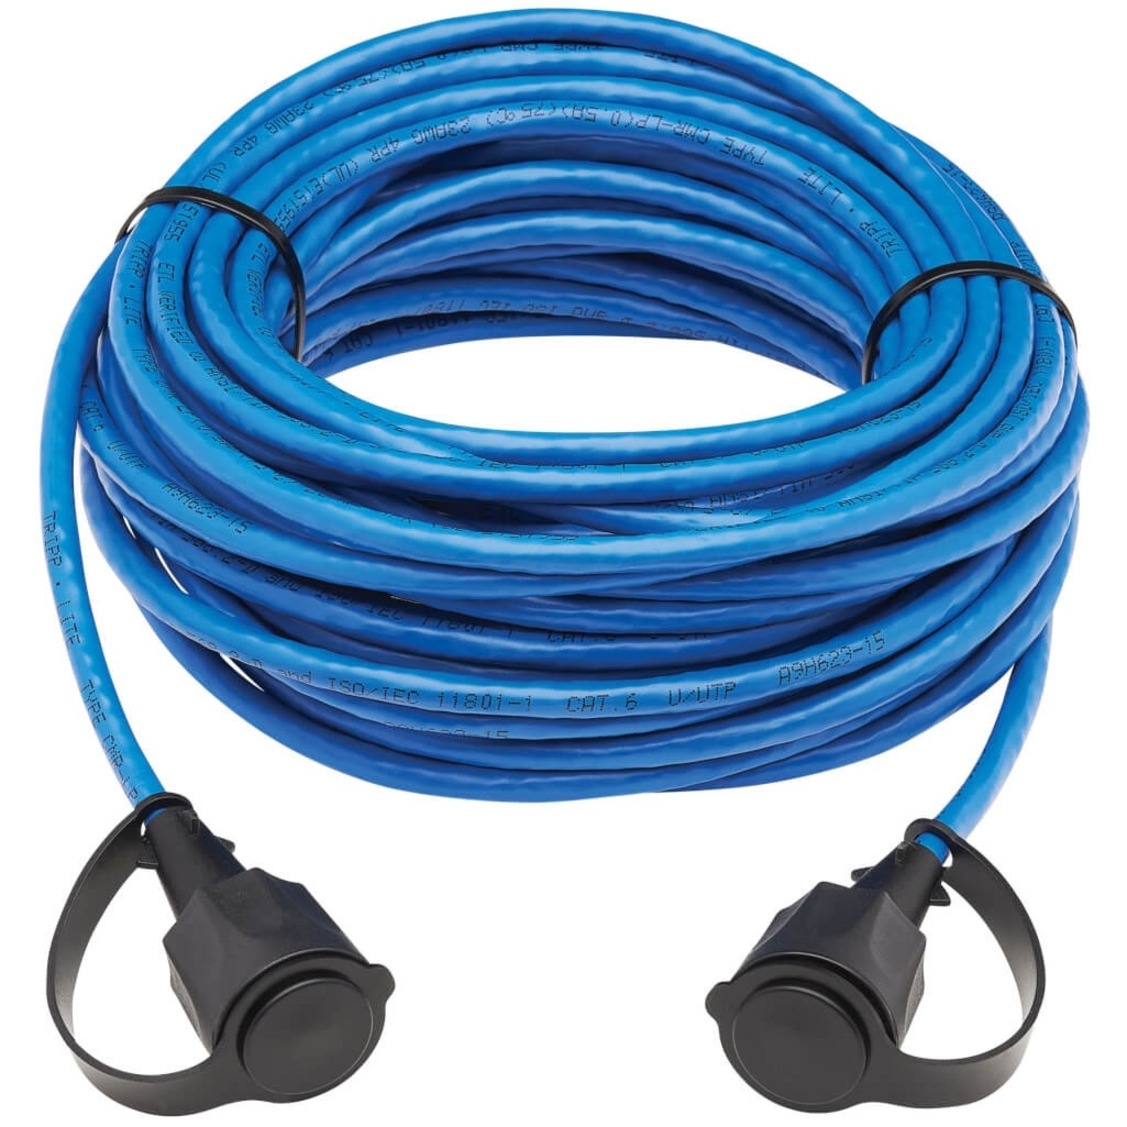 Eaton Tripp Lite Series Industrial Cat6 UTP Ethernet Cable (RJ45 M/M), 100W PoE, CMR-LP, IP68, Blue, 50 ft. (15.24 m) - image 4 of 6